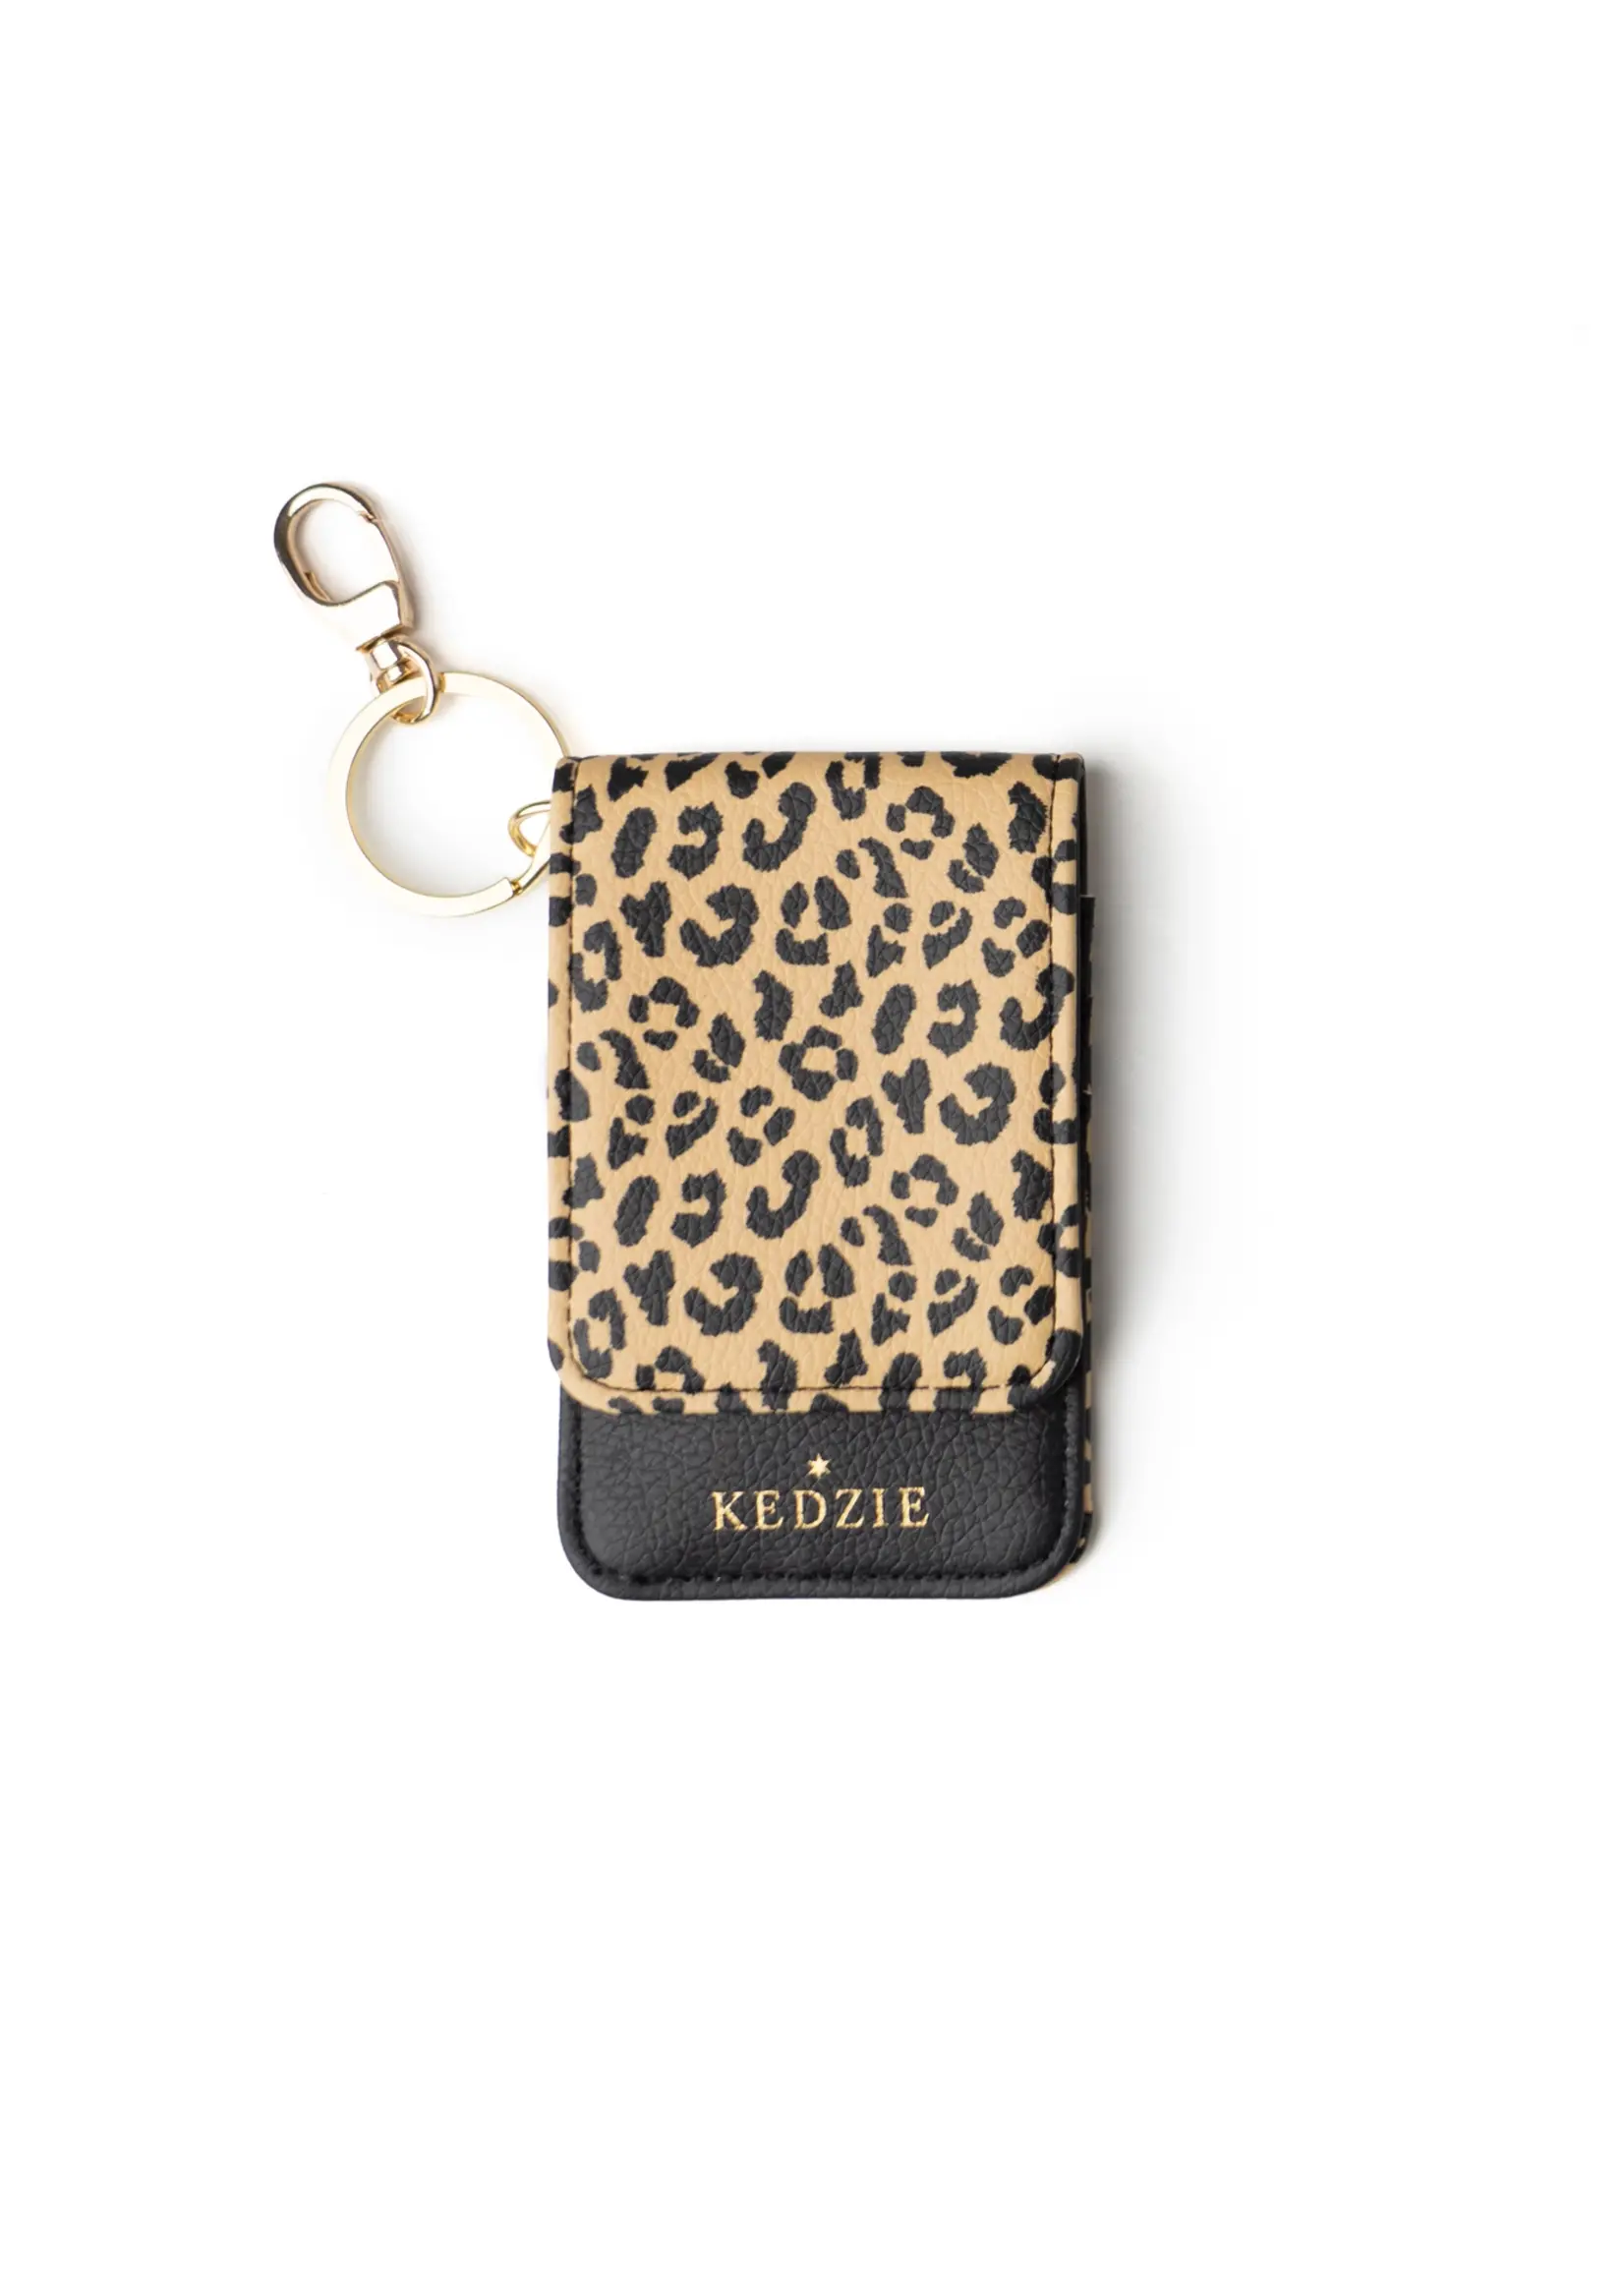 Kedzie Cheetah ID Holder Keychain